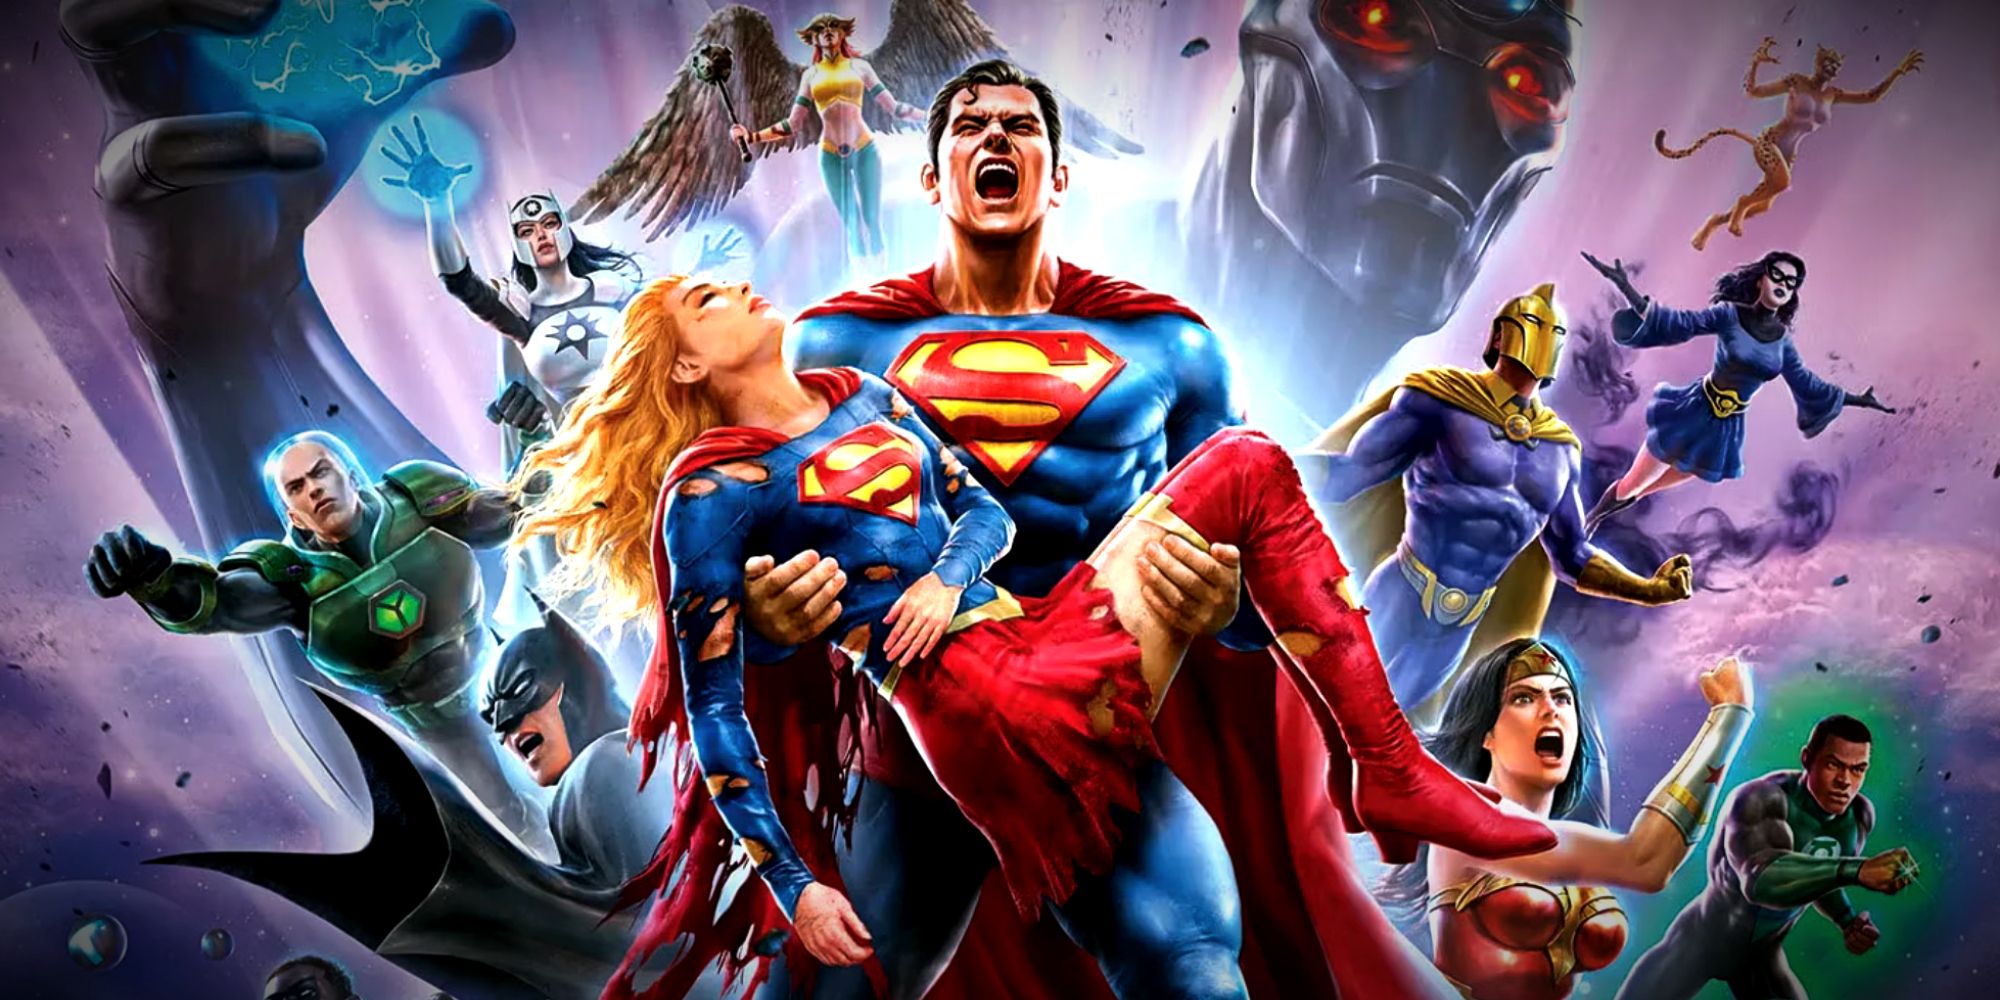 Superman segura Supergirl em Crise nas Infinitas Terras Parte 3 Cartaz de filme animado da DC